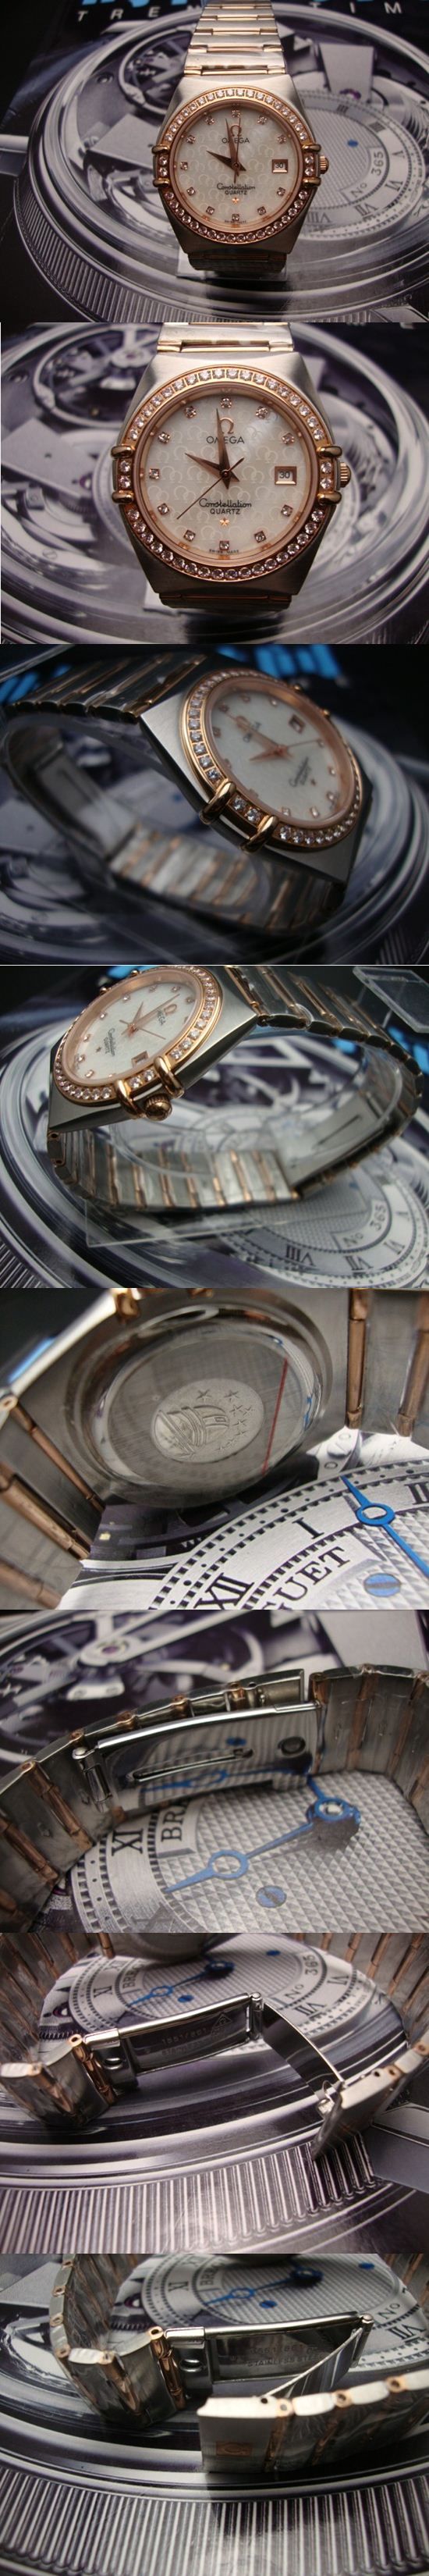 おしゃれなブランド時計がOMEGA-オメガ-腕時計 オメガ 男/女性用腕時計 OMEGA-N-001Aを提供します.